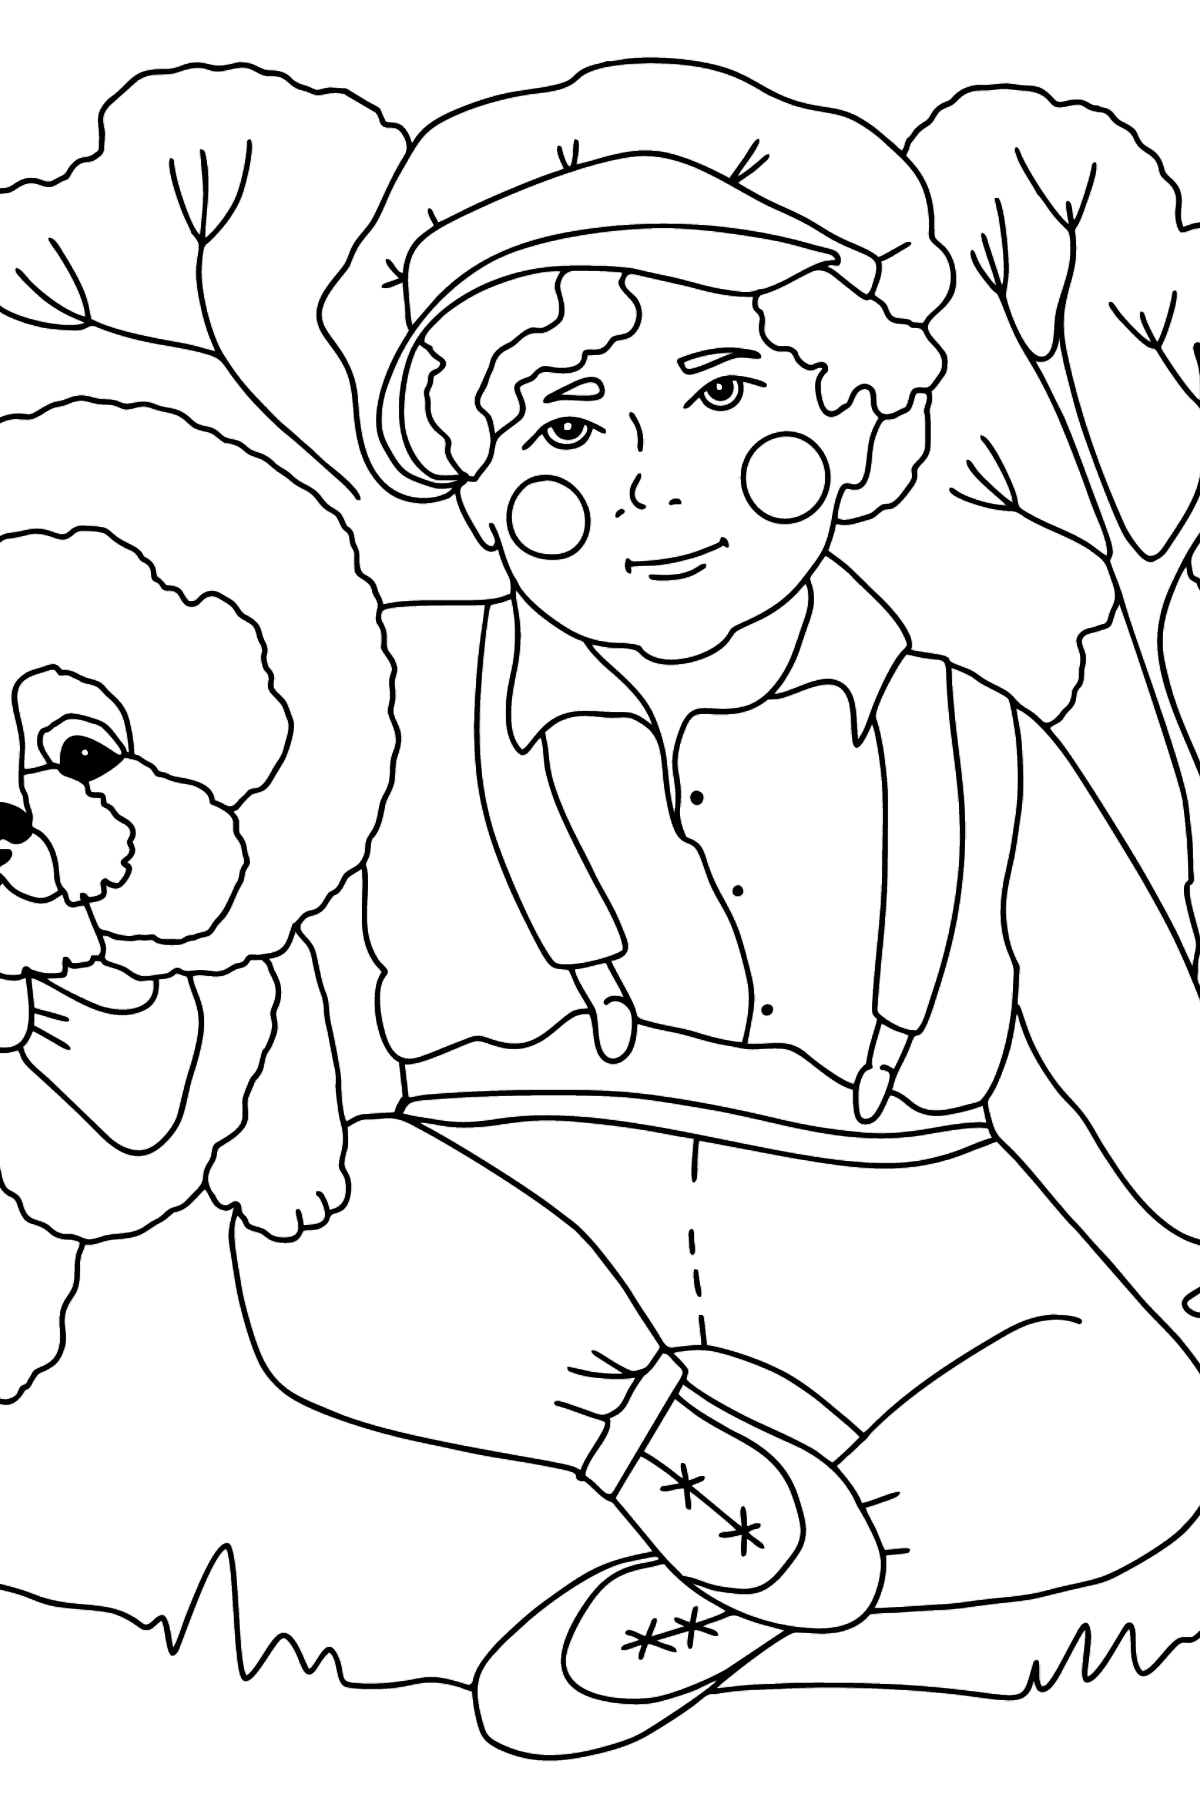 Раскраска Мальчик и Бирон - Картинки для Детей